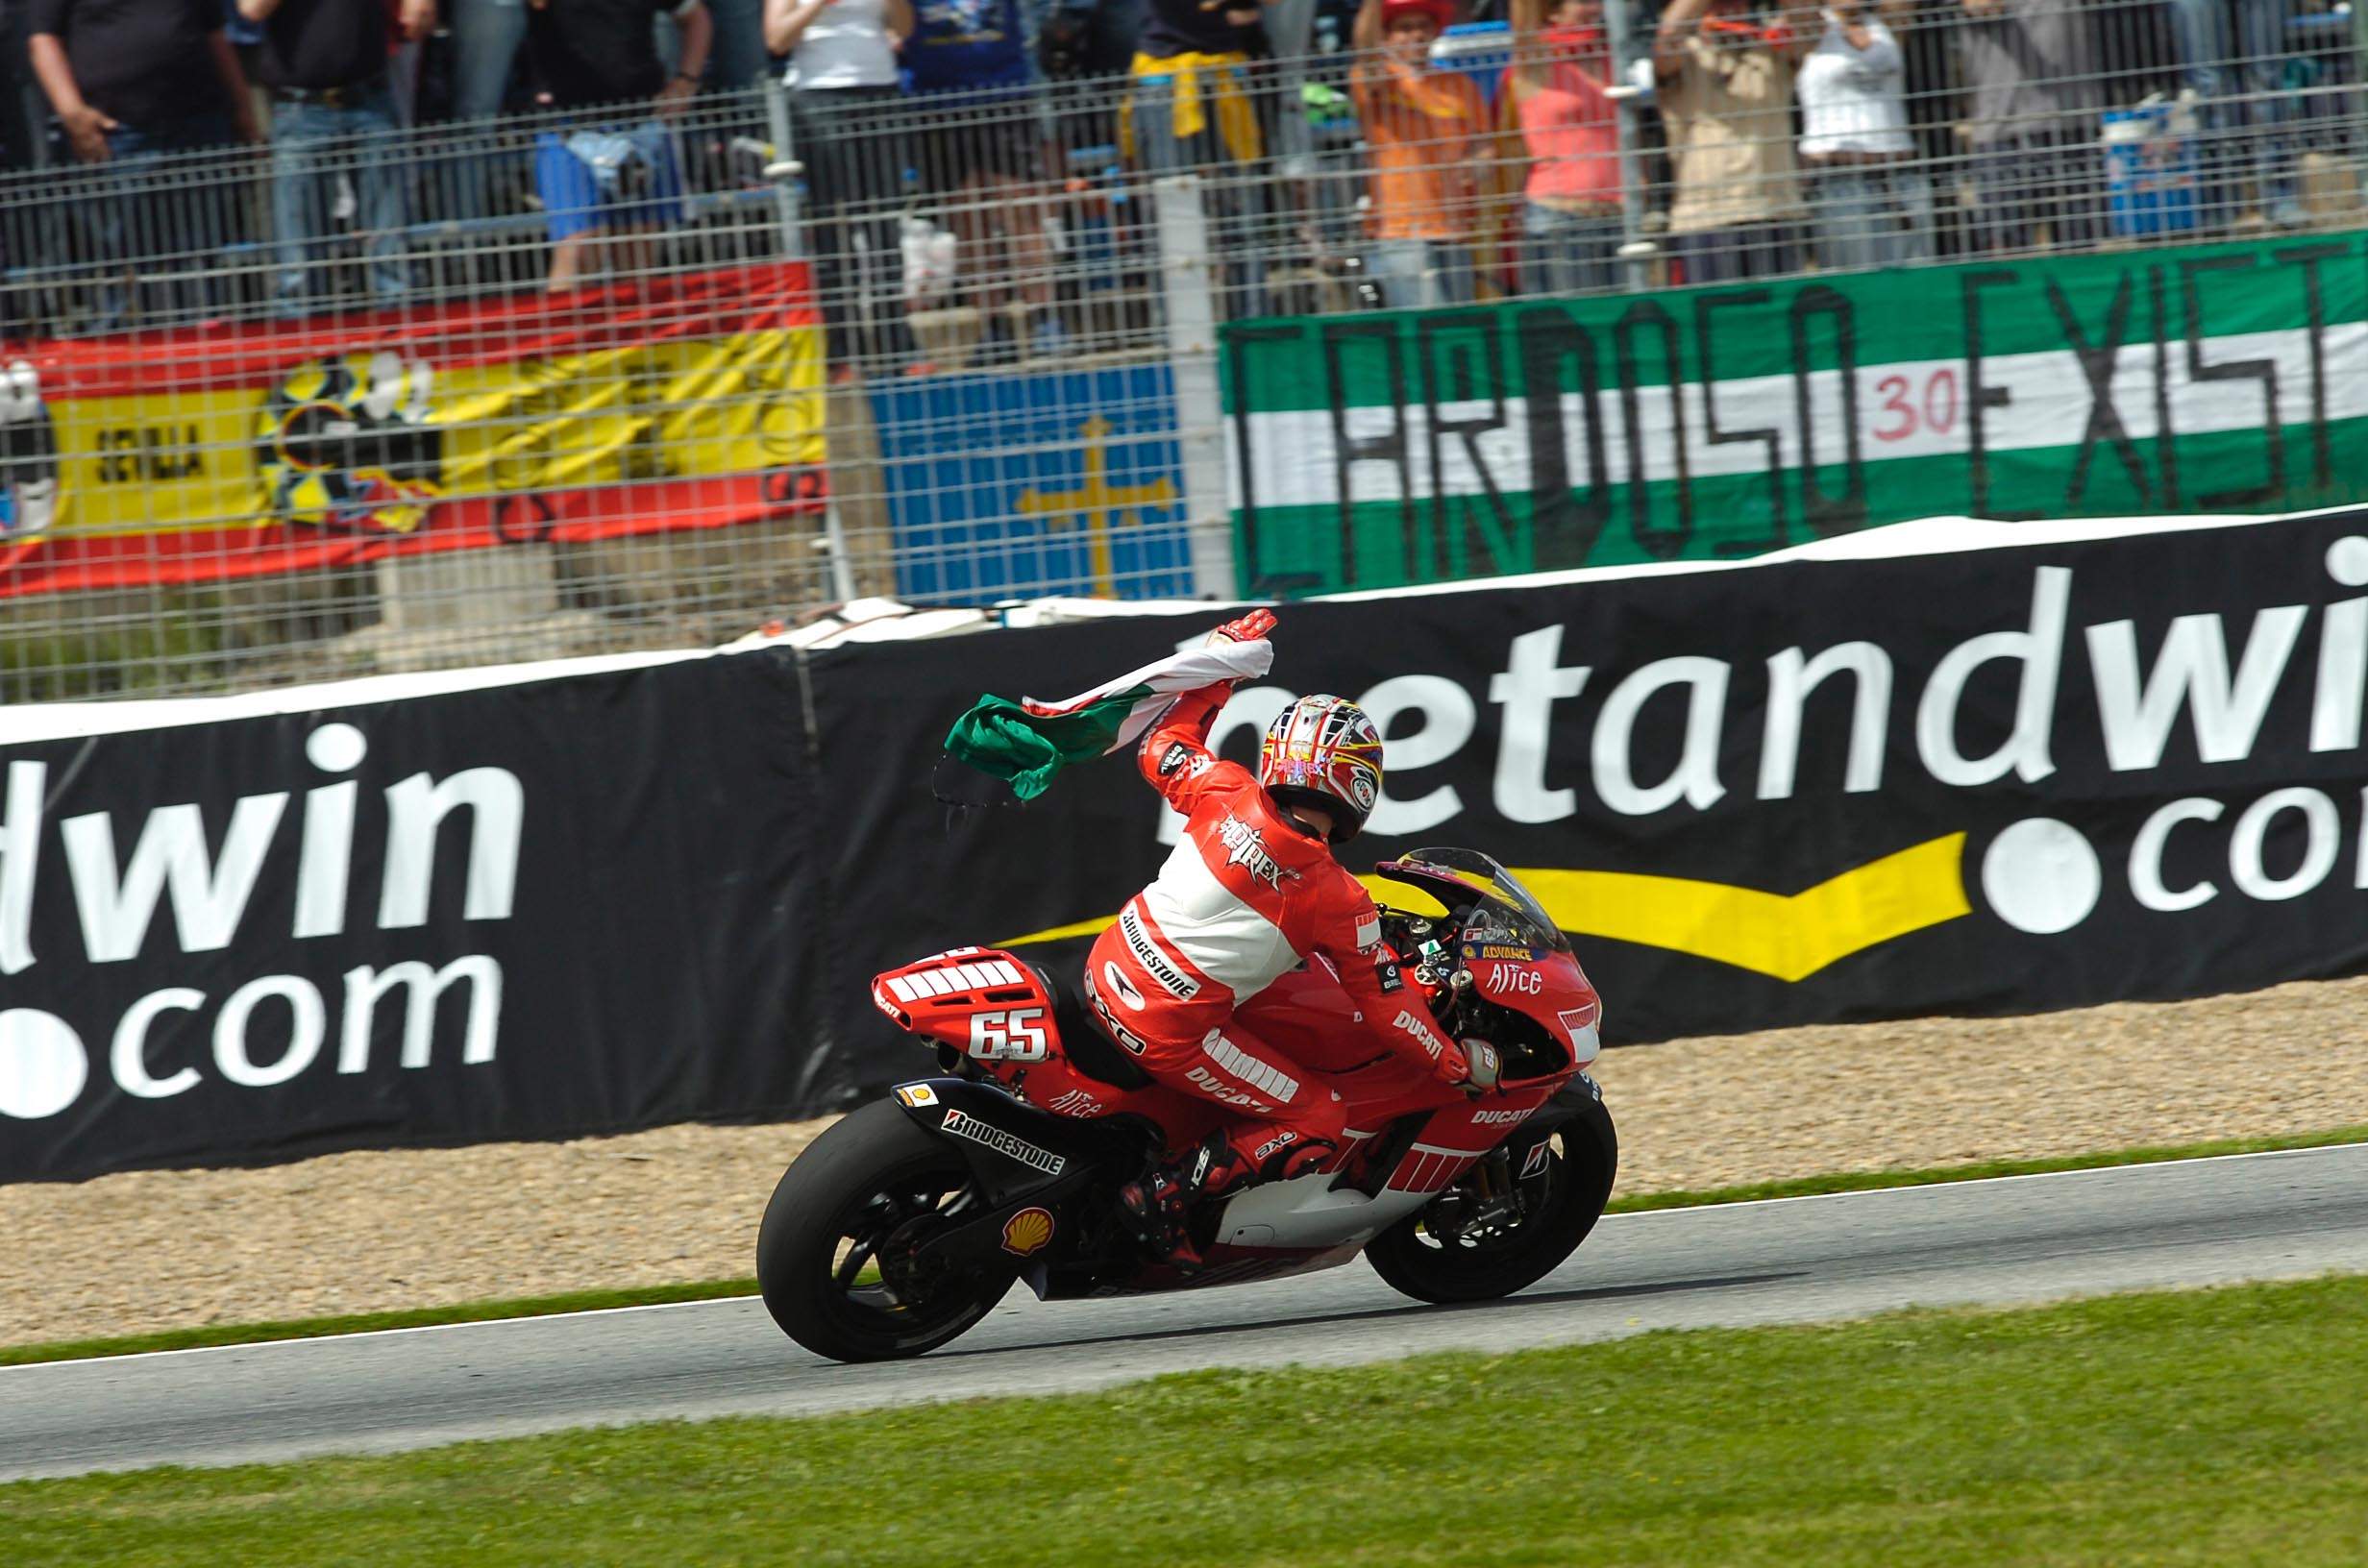 MotoGP: Čekijoje greičiausias buvo L.Capirossi